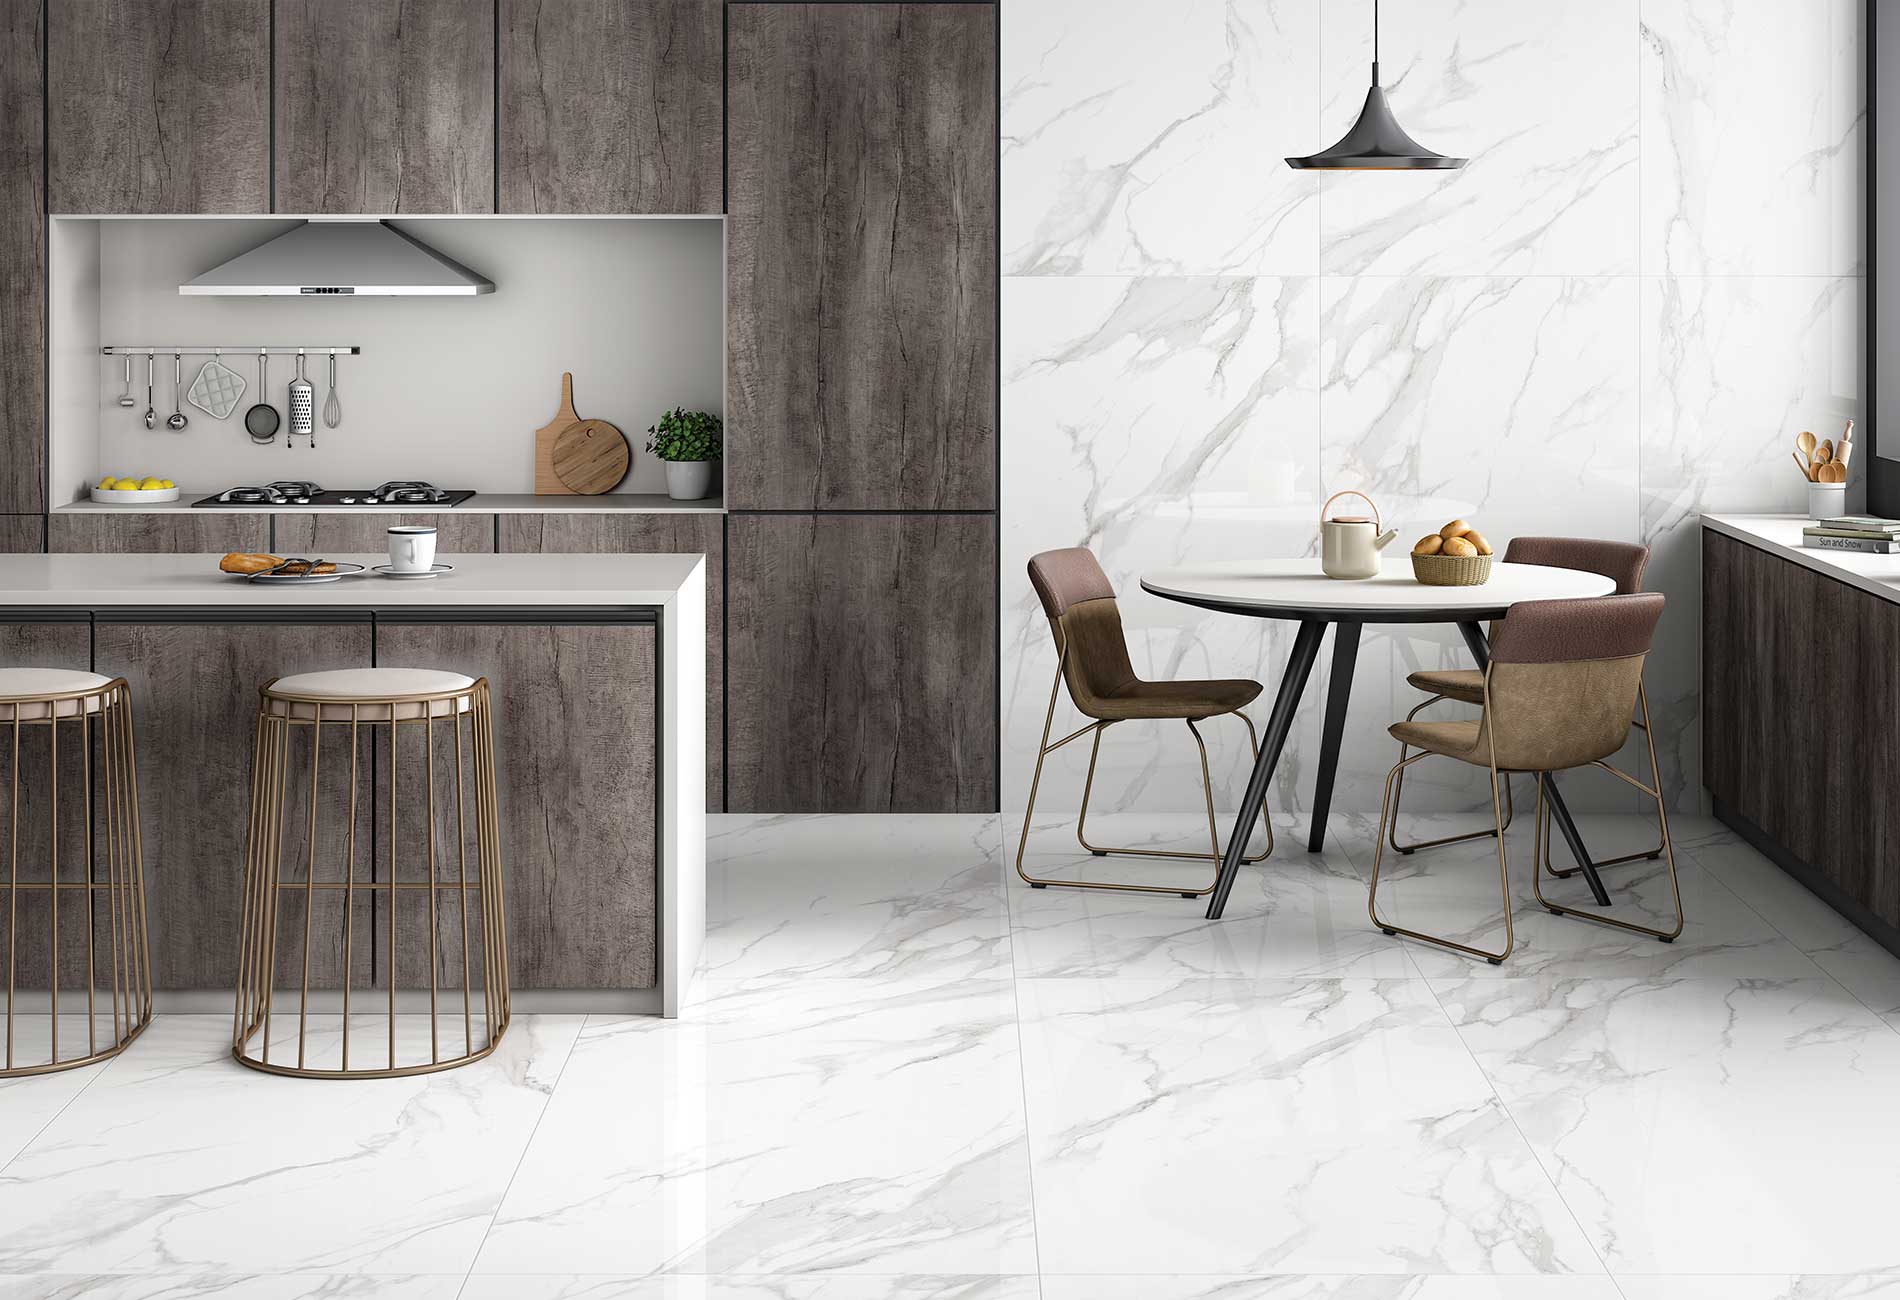 Pallet Deal: 56 Tiles (40 sq.m) Statuario Mercury Grey Marble Effect Polished 60x120cm Porcelain Wall & Floor Tile